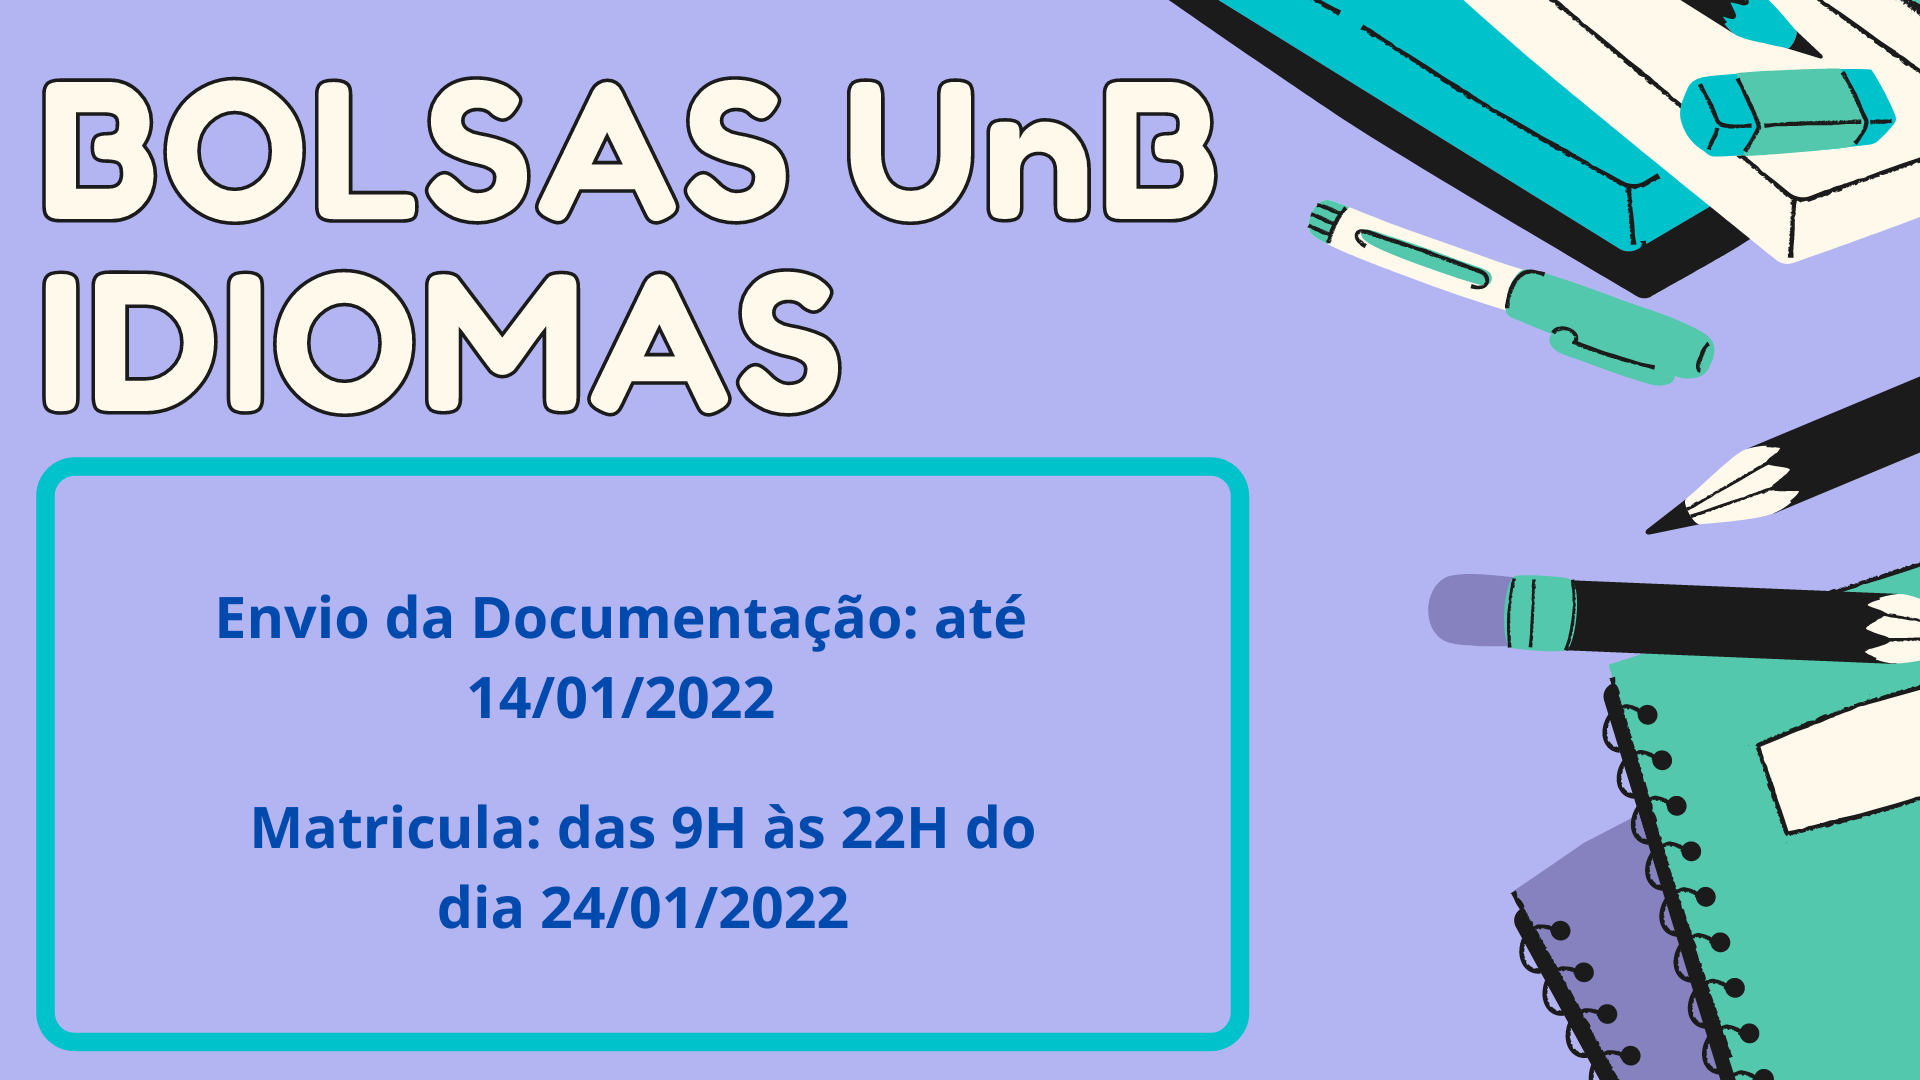 BOLSAS_UnB_IDIOMAS.png